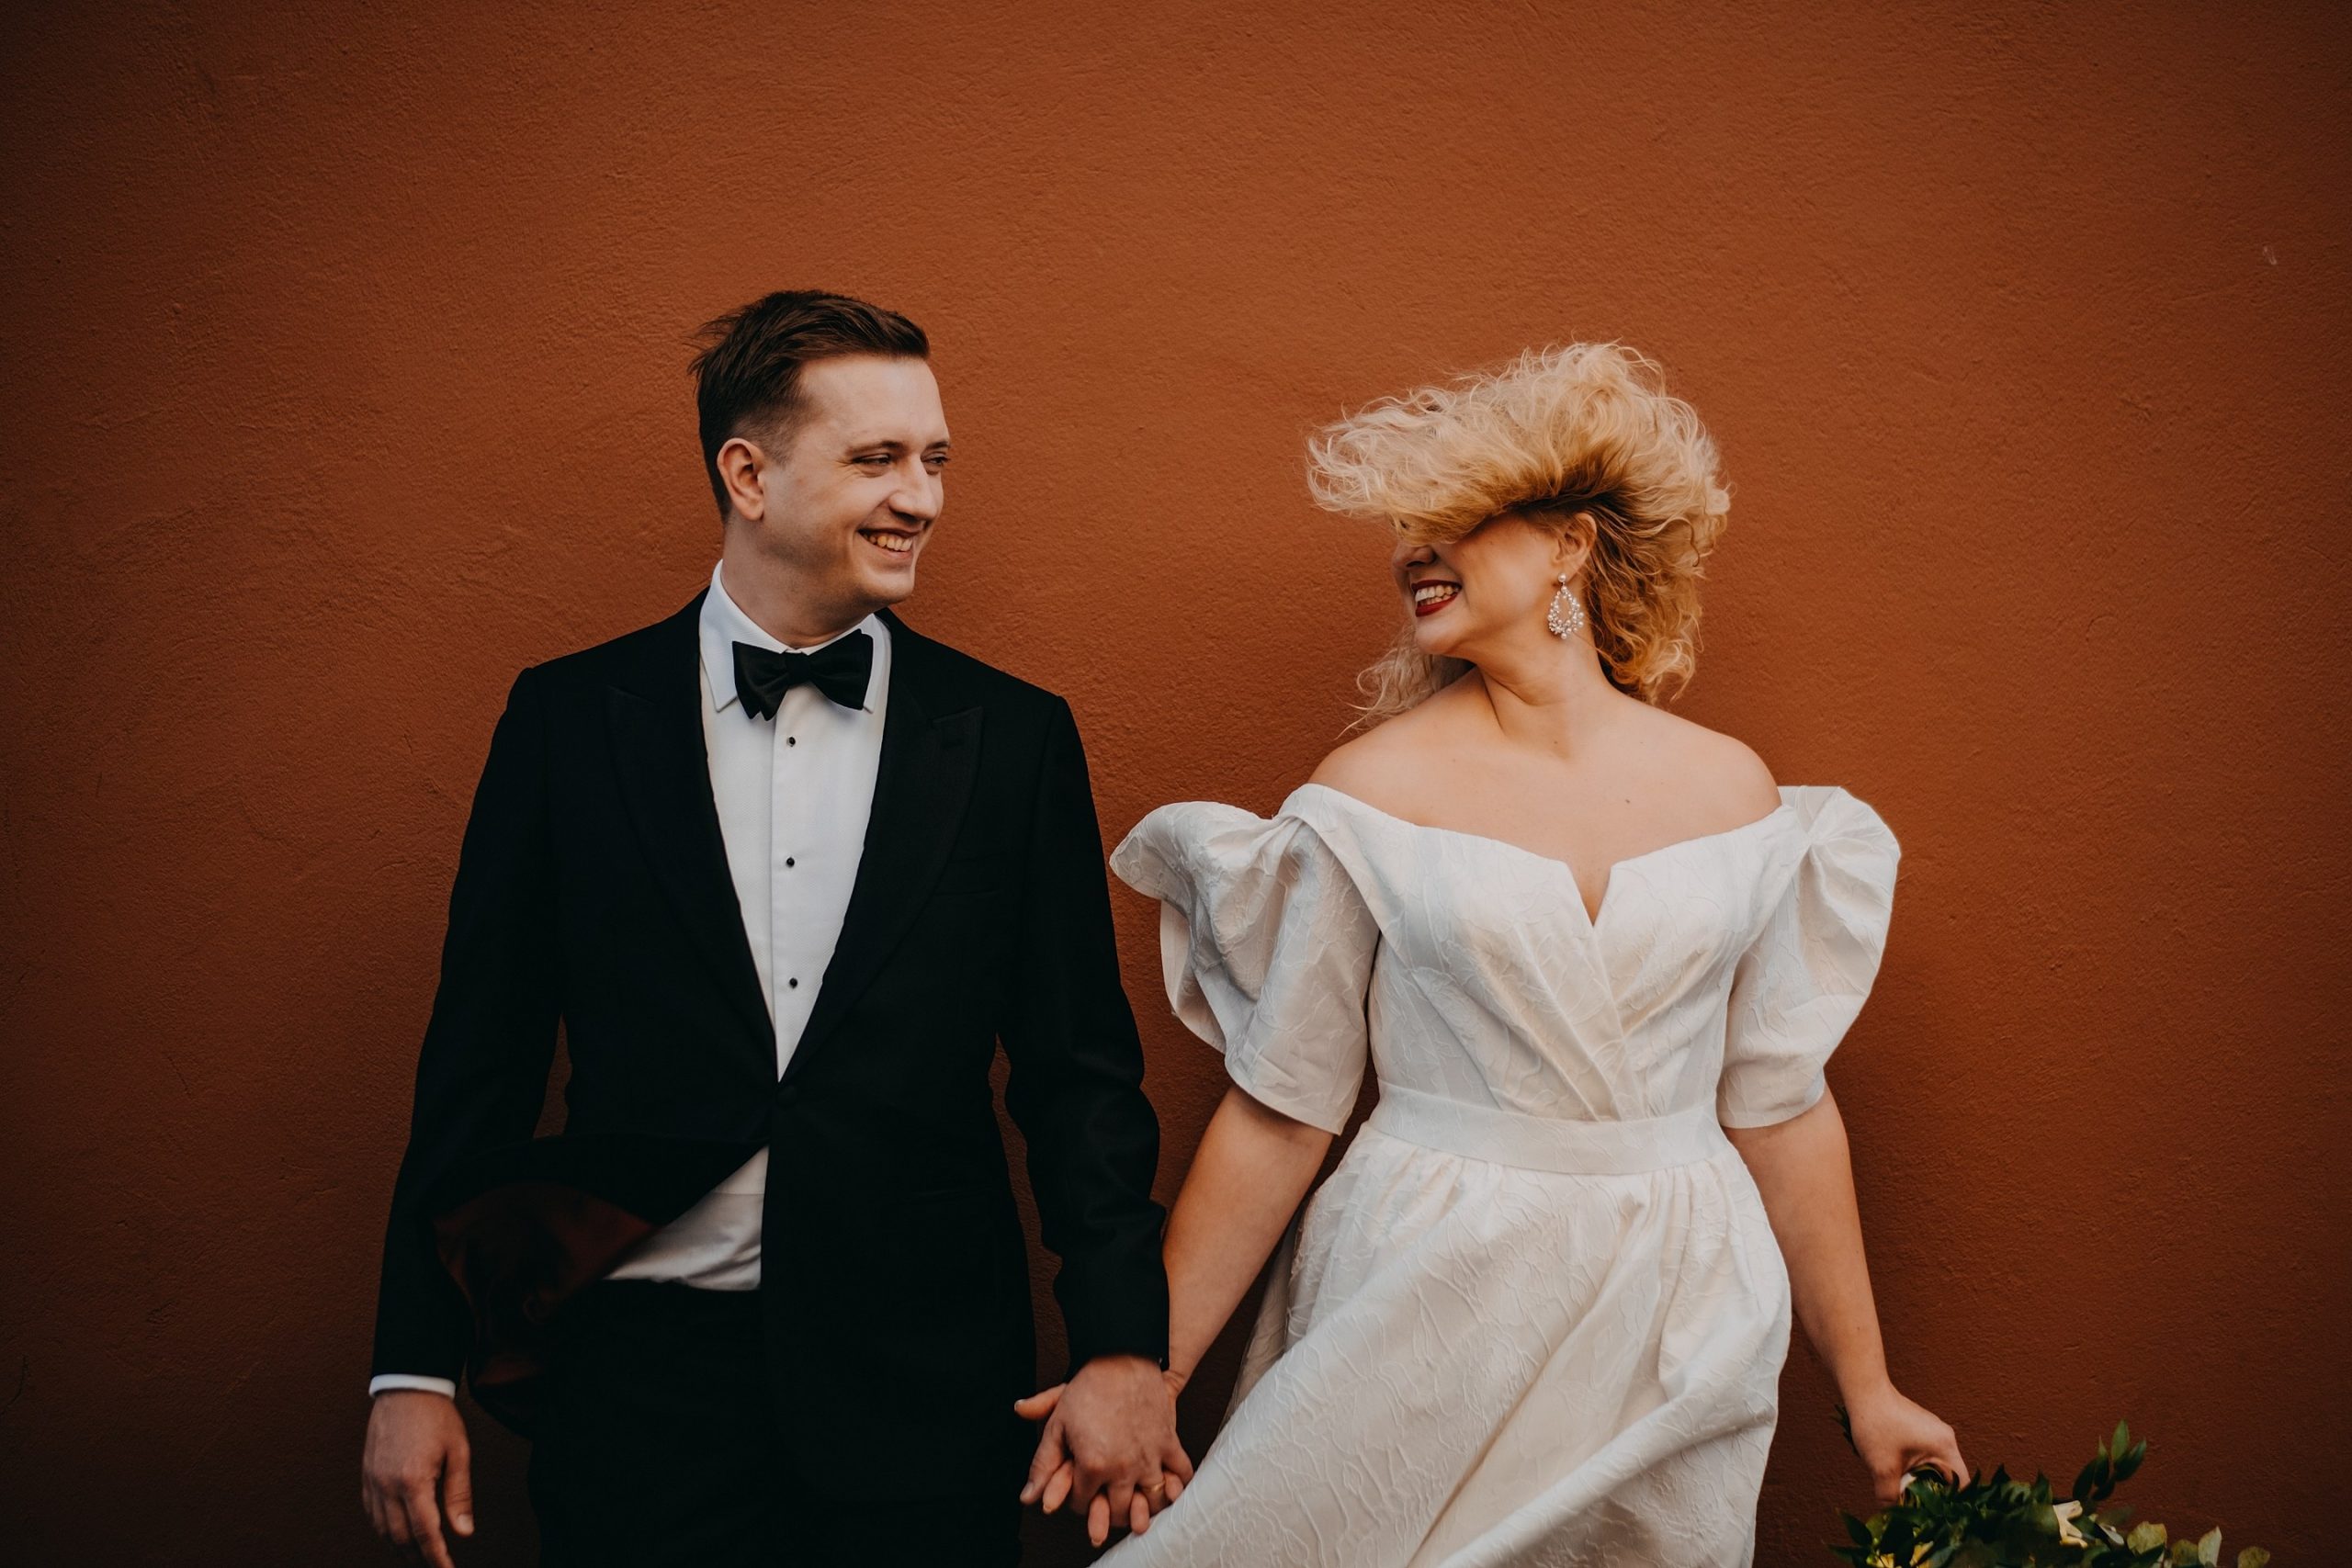 fotografas Martynas Musteikis smokingas juodas siena varlytė vėjas plaukai šukuosena jaunieji vestuvės fotosesija linksma fun įdėjos rustic boho stilius